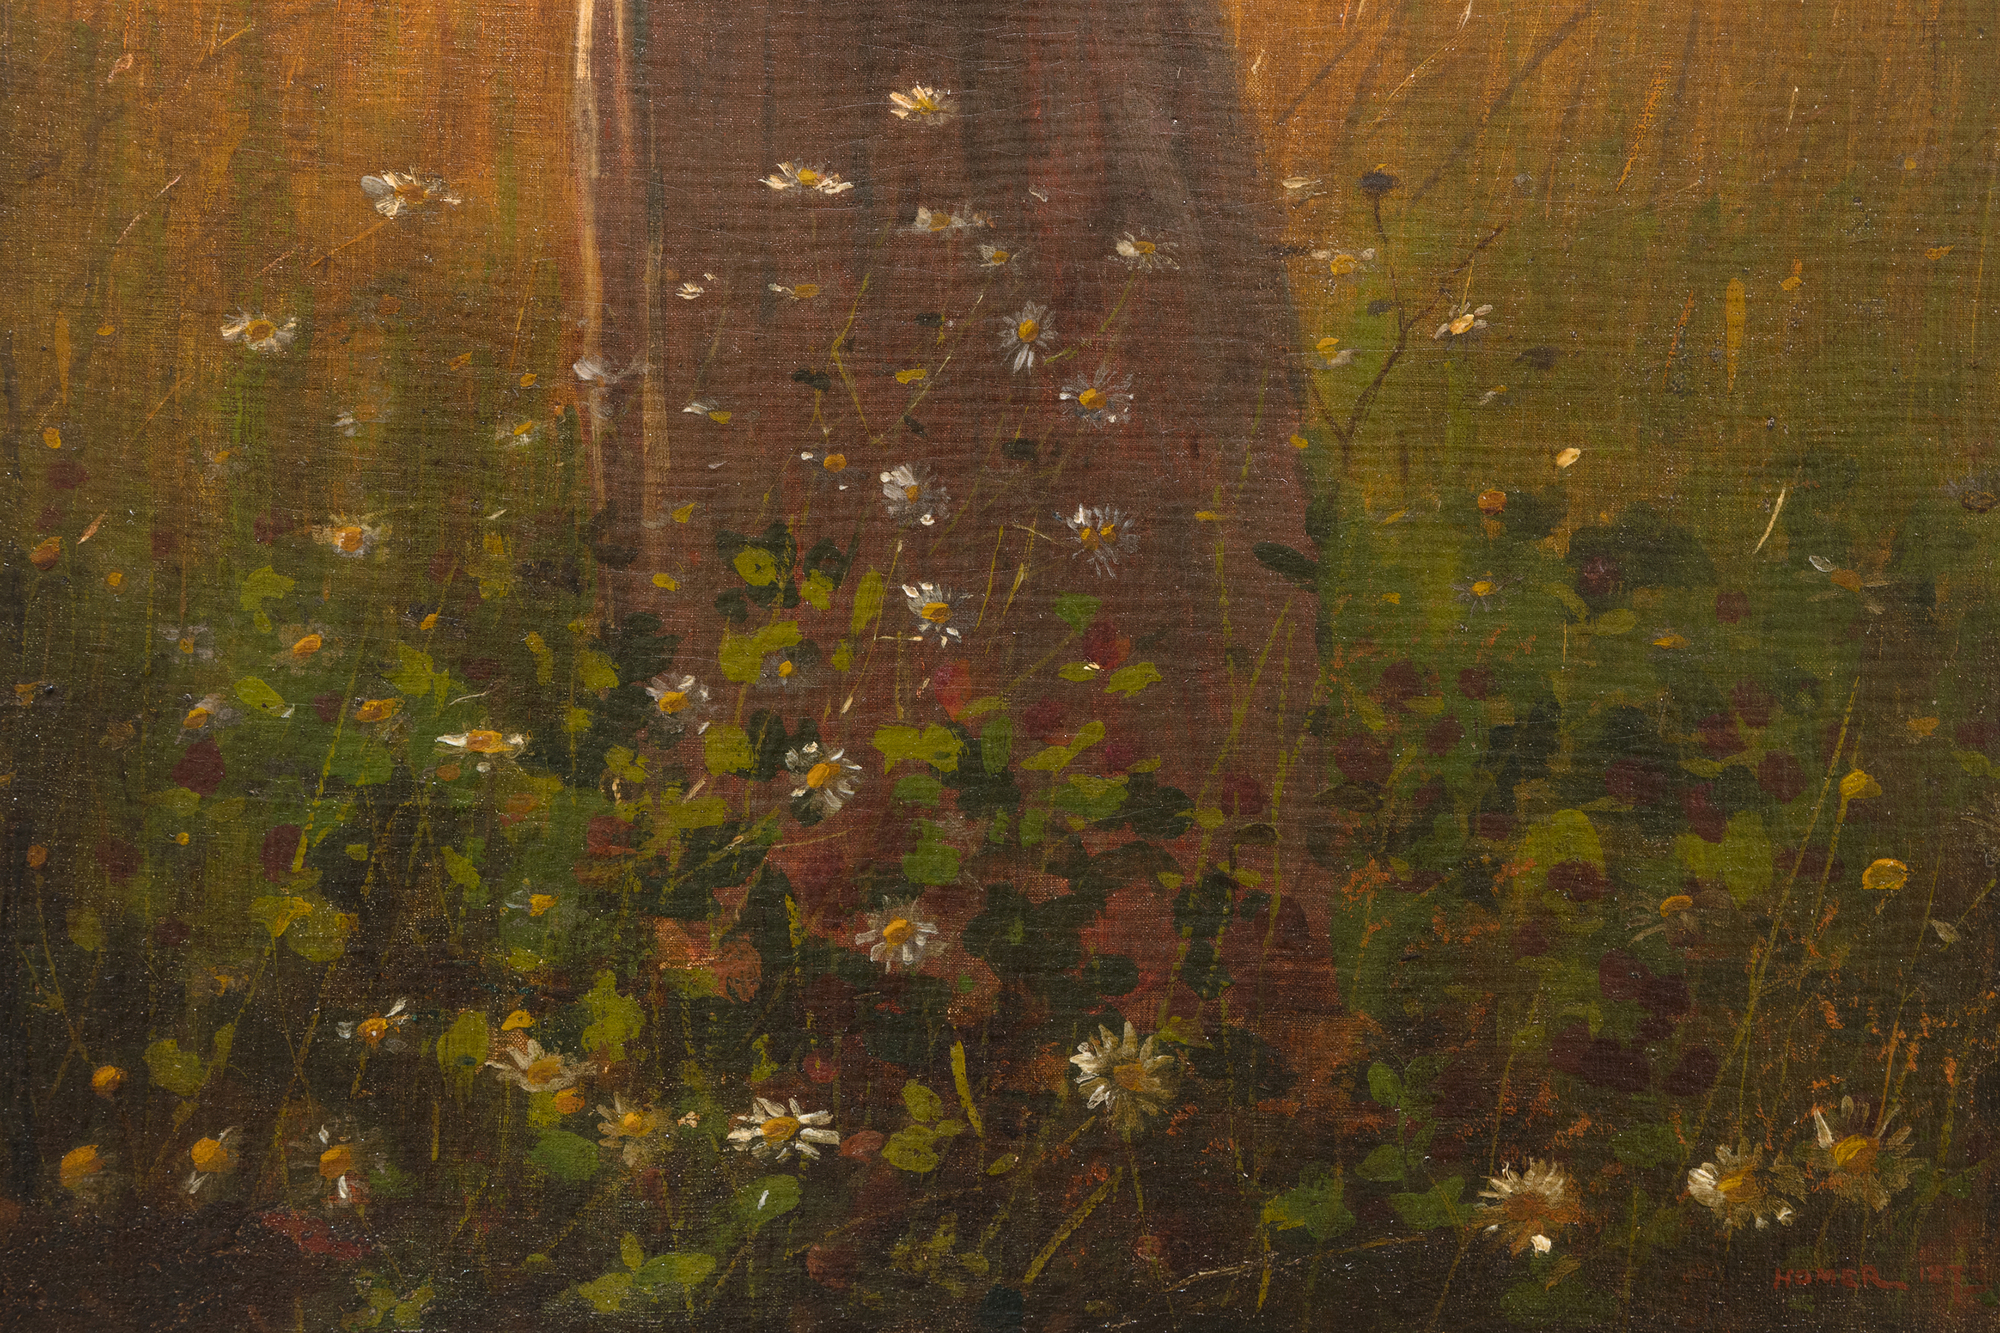 Au début des années 1870, Winslow Homer a souvent peint des scènes de la vie à la campagne près d'un petit hameau agricole réputé depuis des générations pour ses remarquables champs de blé, situé entre la rivière Hudson et les Catskills, dans l'État de New York. Aujourd'hui, Hurley est bien plus célèbre pour avoir inspiré l'une des plus grandes œuvres d'Homer, Snap the Whip, peinte au cours de l'été 1872. Parmi les nombreuses autres peintures inspirées par la région, Girl Standing in the Wheatfield est riche en sentiments, mais sans sentimentalisme excessif. Elle est directement liée à une étude peinte en France en 1866 et intitulée In the Wheatfields (Dans les champs de blé), ainsi qu'à une autre étude peinte l'année suivante, après son retour en Amérique. Mais Homère aurait sans doute été le plus fier de celle-ci. Il s'agit d'un portrait, d'une étude de costume, d'une peinture de genre dans la grande tradition de la peinture pastorale européenne, et d'un tour de force atmosphérique dramatiquement rétro-éclairé, imprégné de la lumière de l'heure qui s'estompe rapidement, avec des notes lambda et fleuries et des touches d'épis de blé. En 1874, Homer a envoyé quatre tableaux à l'exposition de la National Academy of Design. L'une d'entre elles était intitulée "Girl". Ne serait-ce pas celle-ci ?